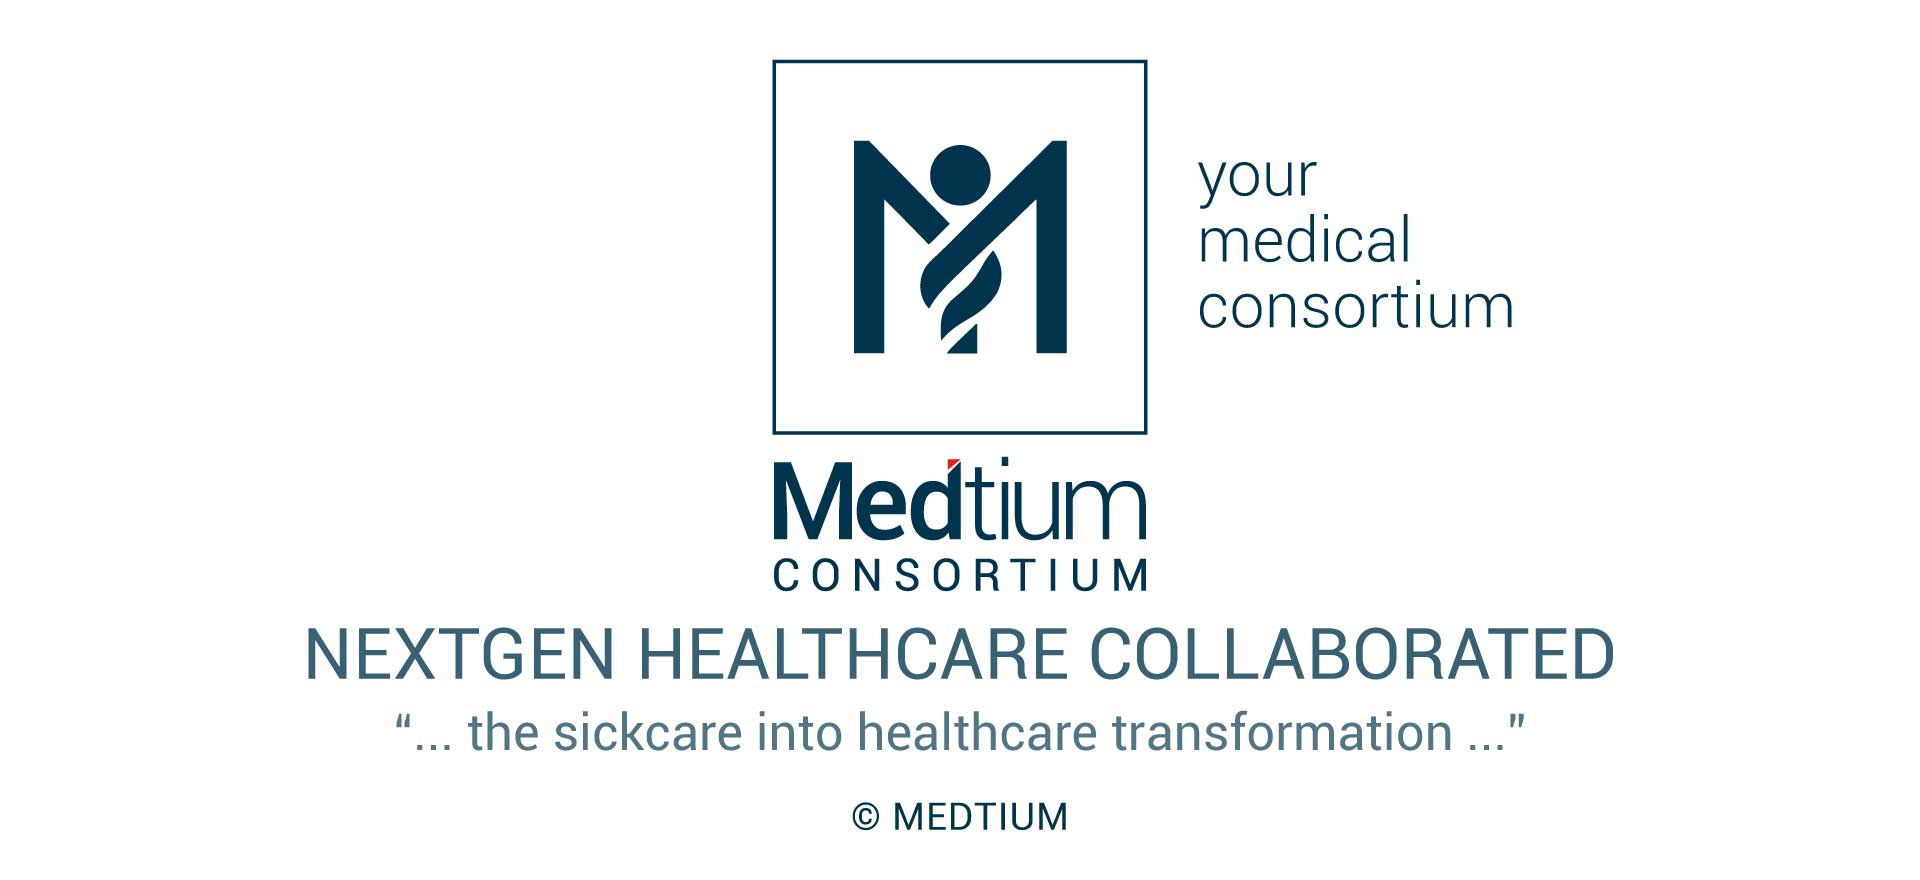 Medtium Consortium